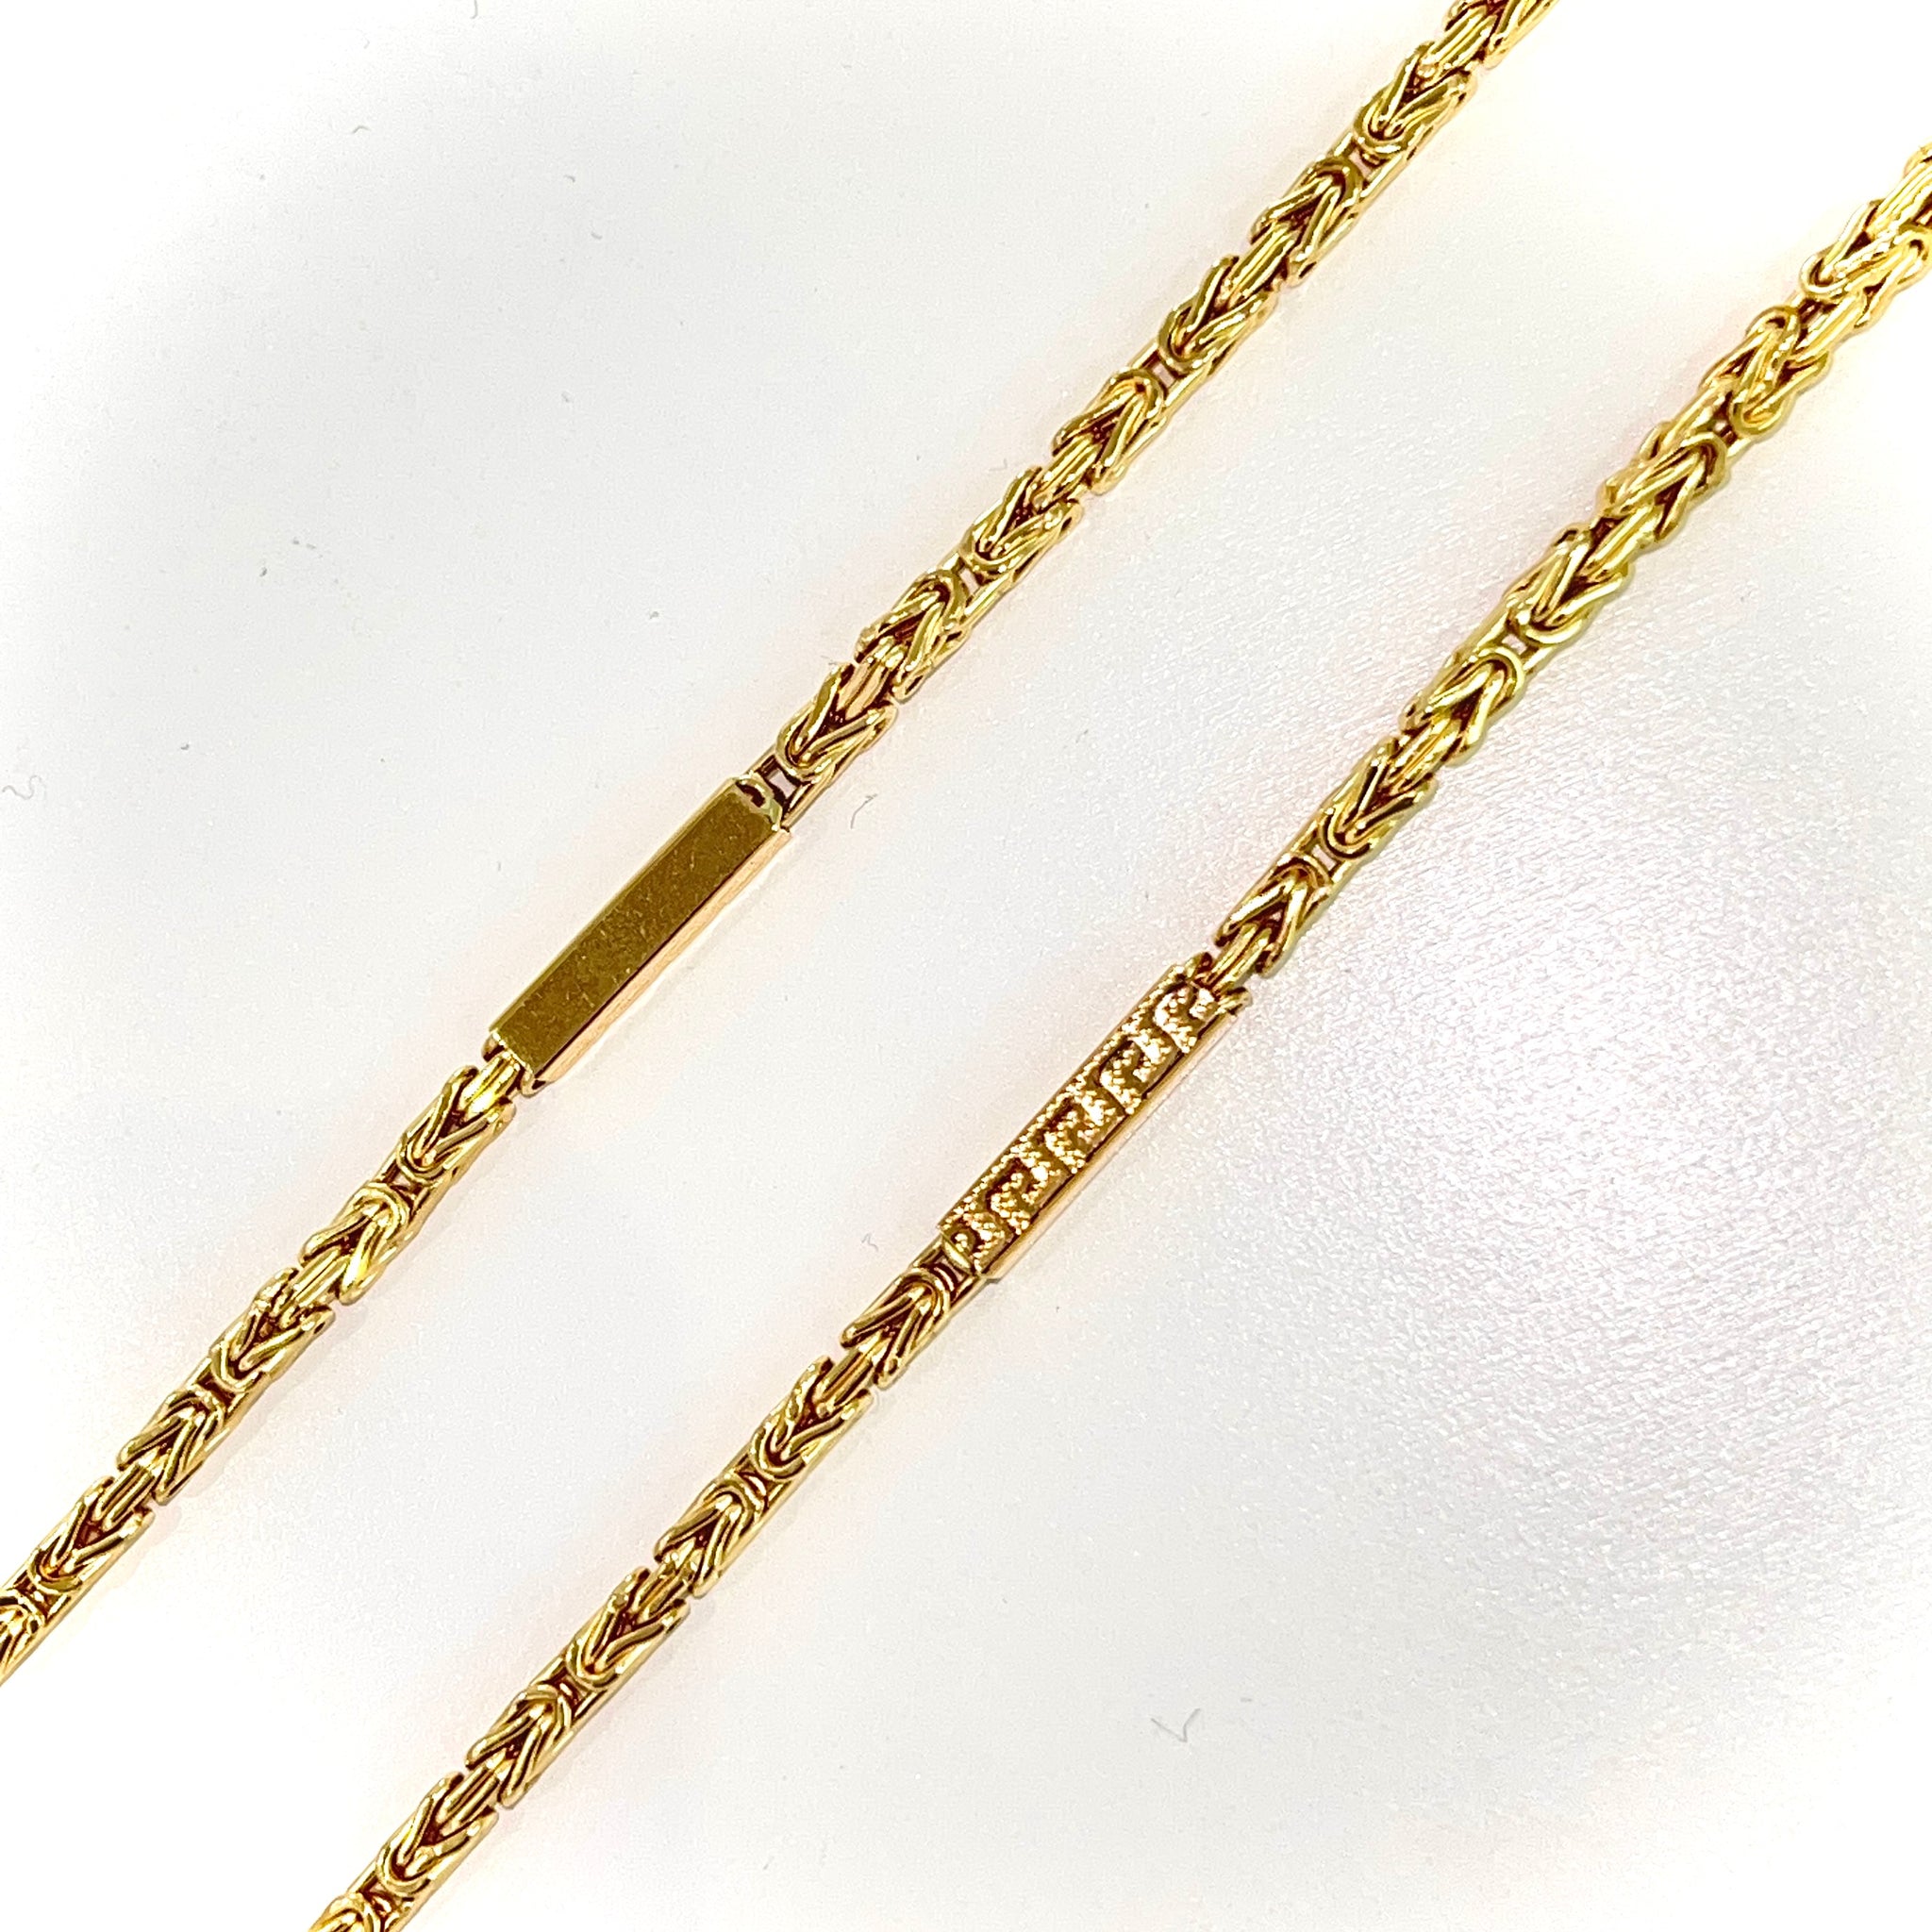 Kingschain 65cm / 4.5mm - 18 carat gold